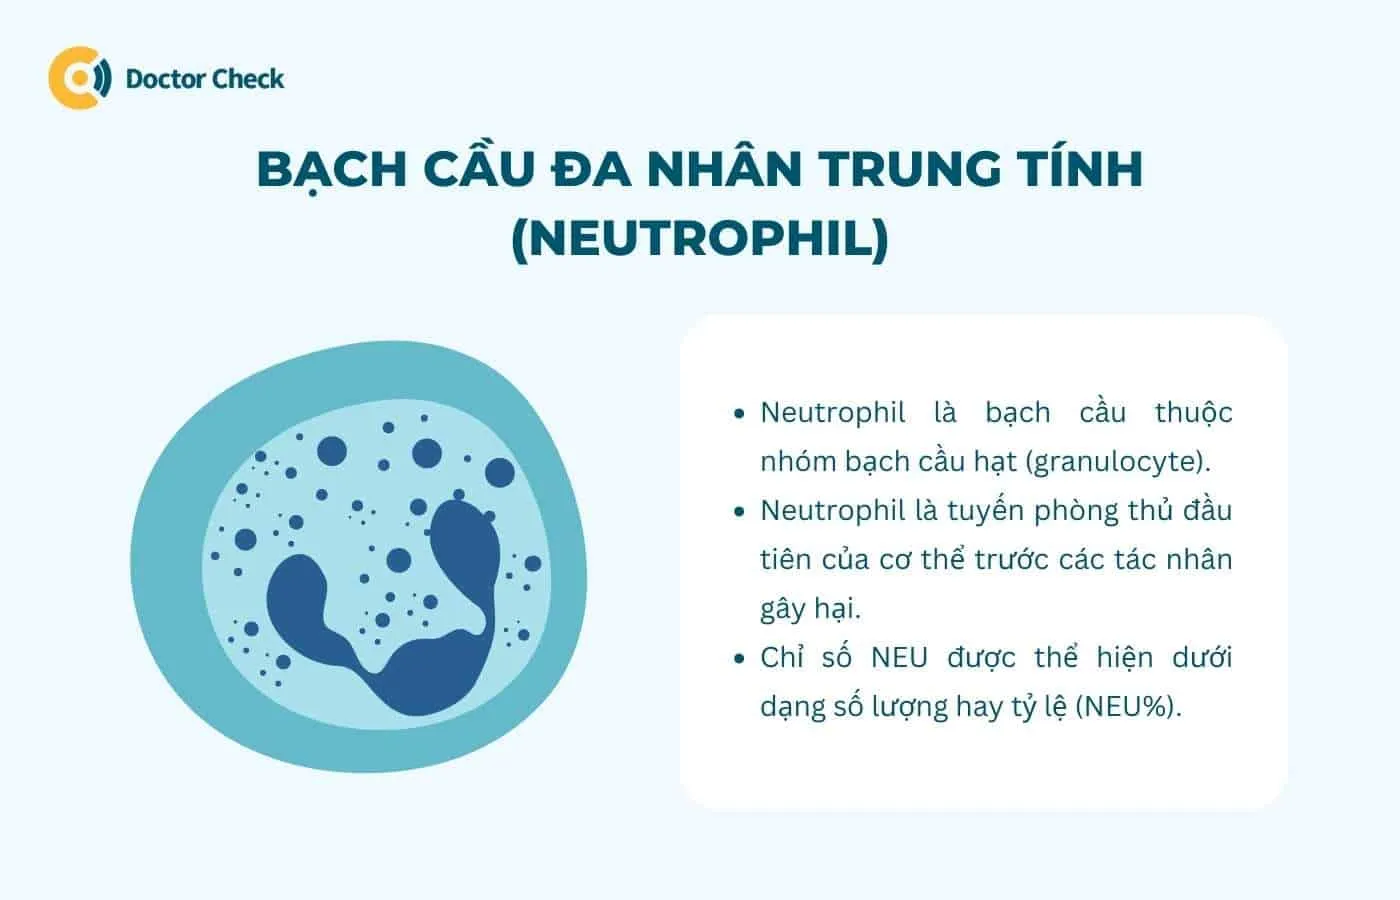 Bạch cầu nhiều nhân trung tính (neutrophil) là gì?